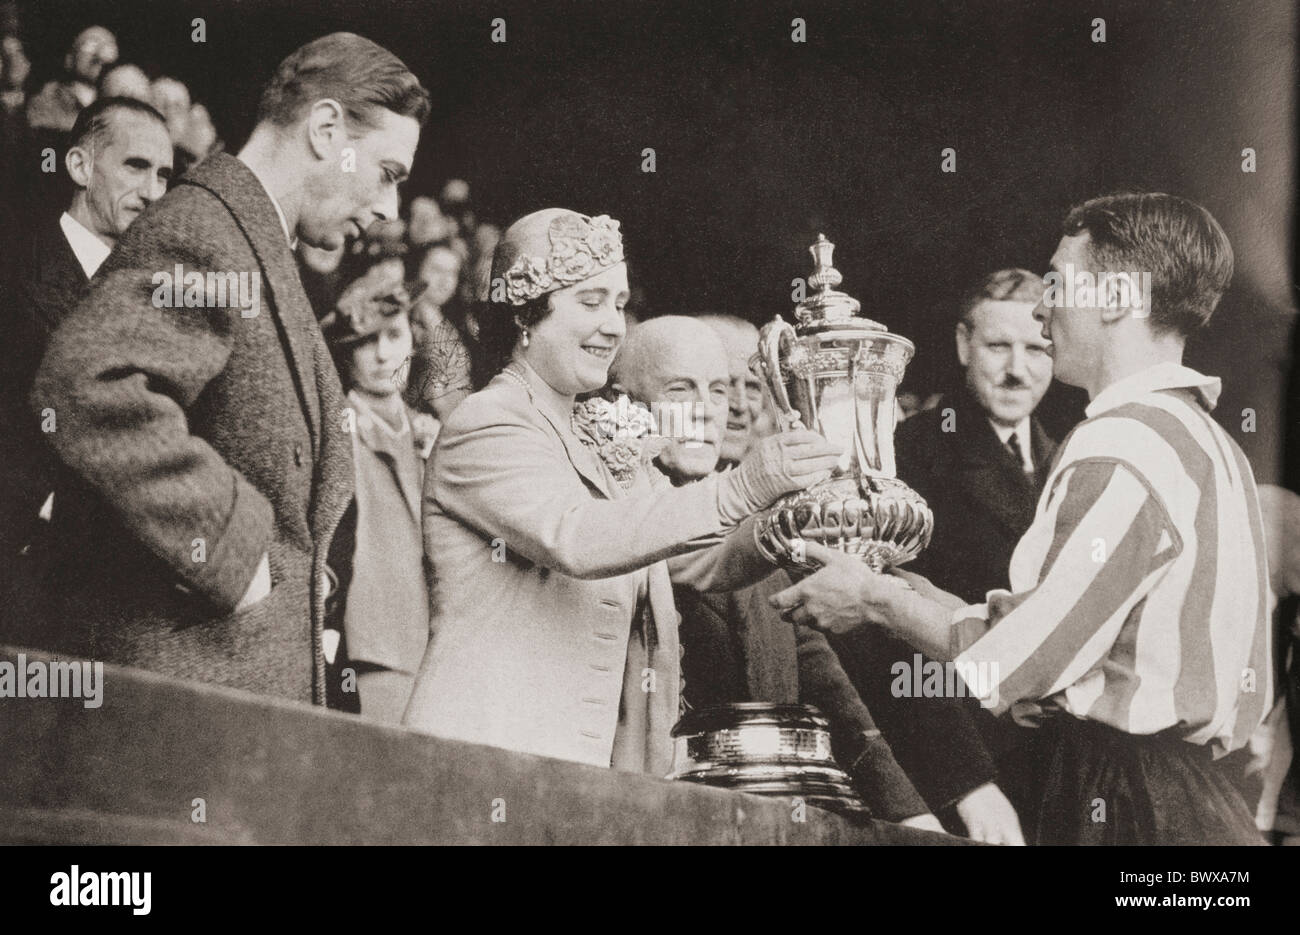 König George VI und Königin Elizabeth präsentiert den Pokal Raich Carter, der Sunderland-Kapitän nach seinem Sieg des Teams im Wembley-Stadion Stockfoto